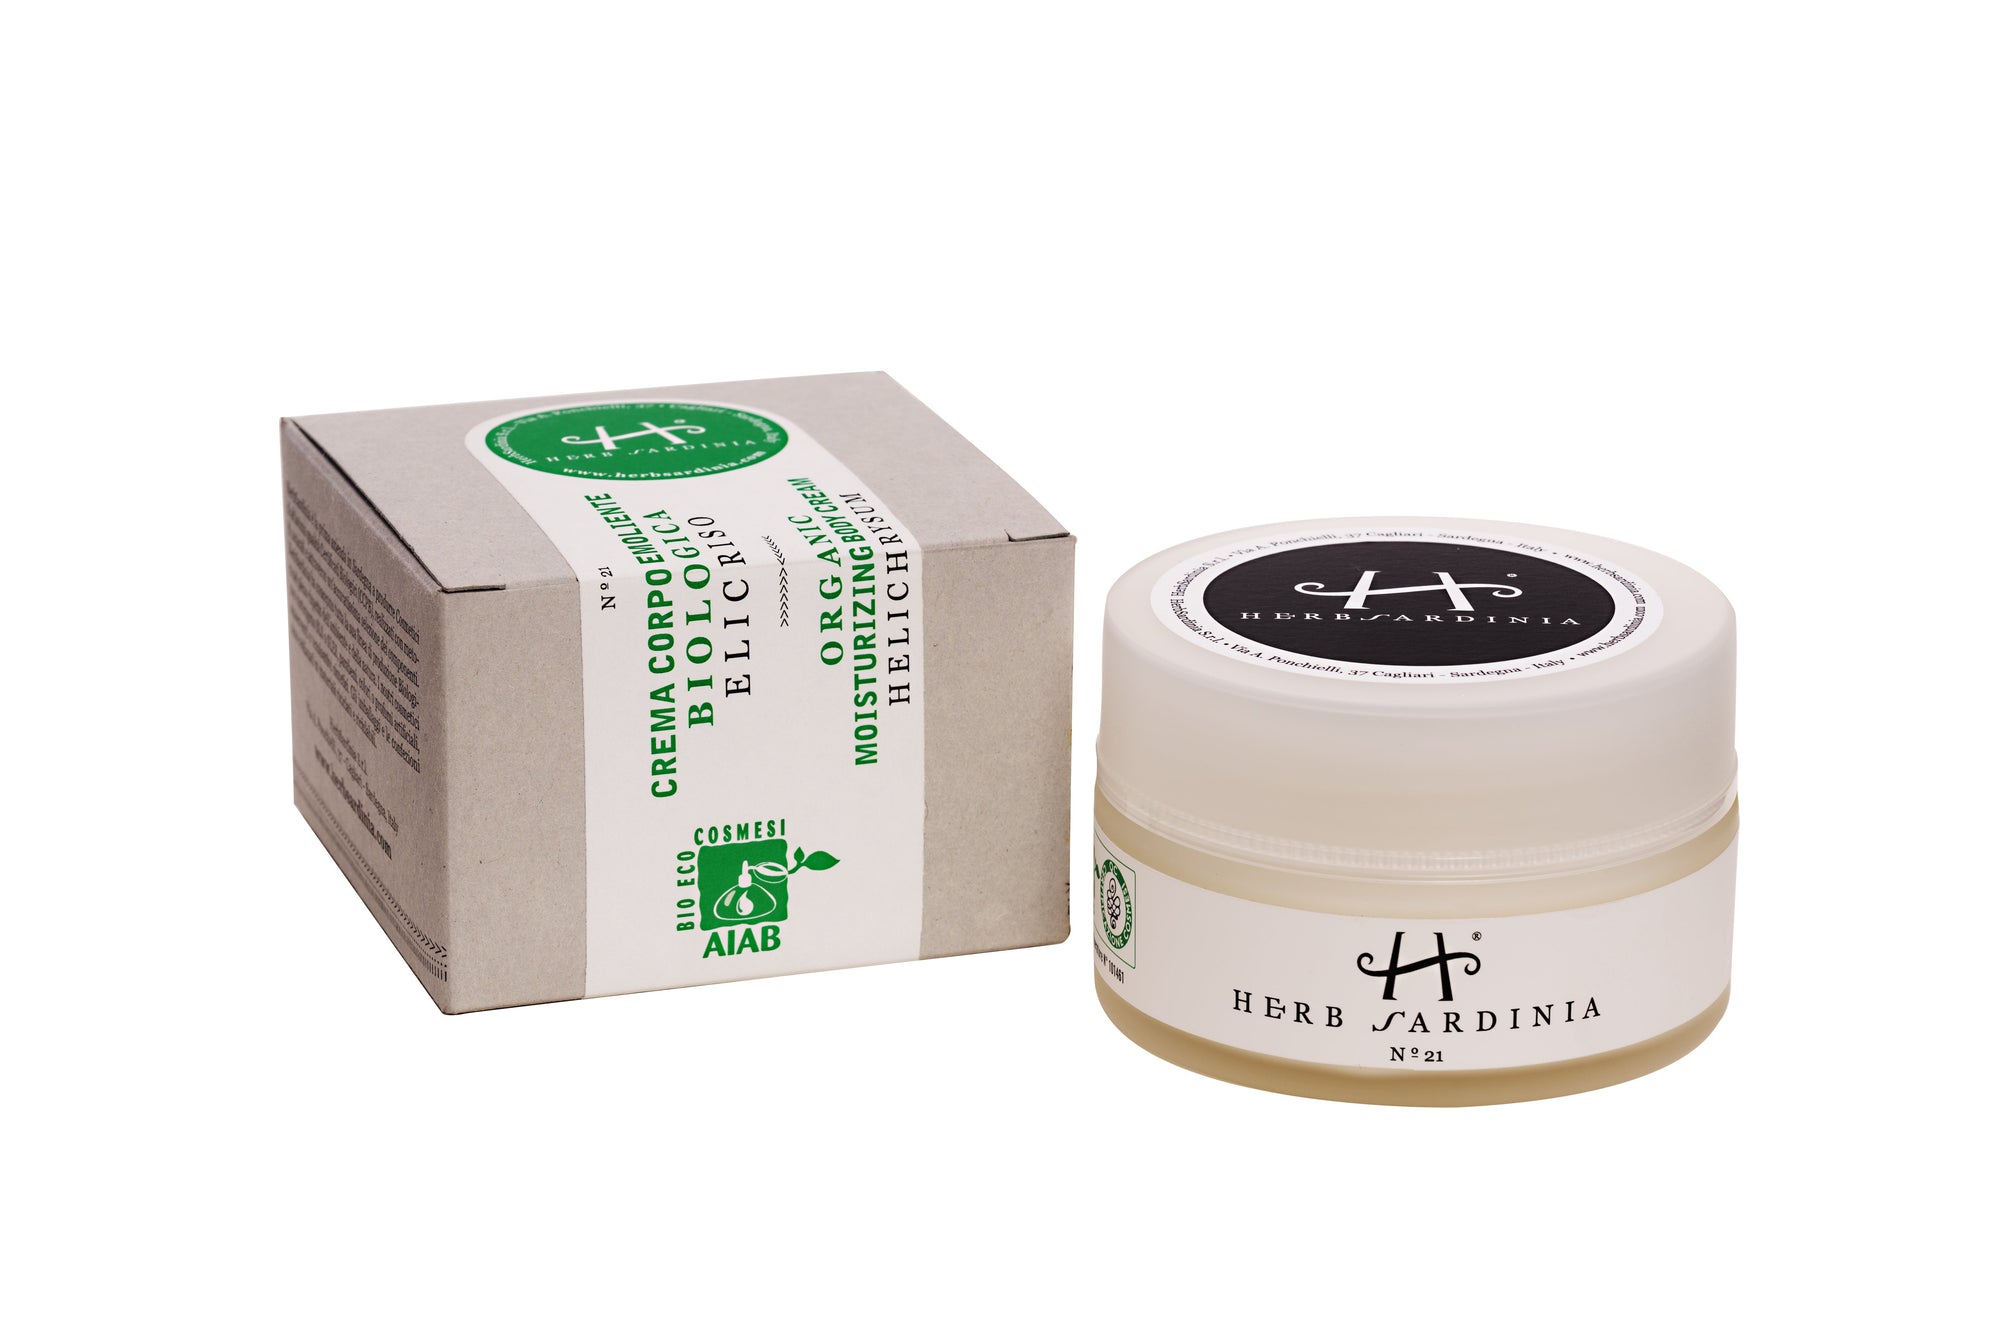 HerbSardinia Organic Helichrysum Moisturizing Body Cream 100 ml